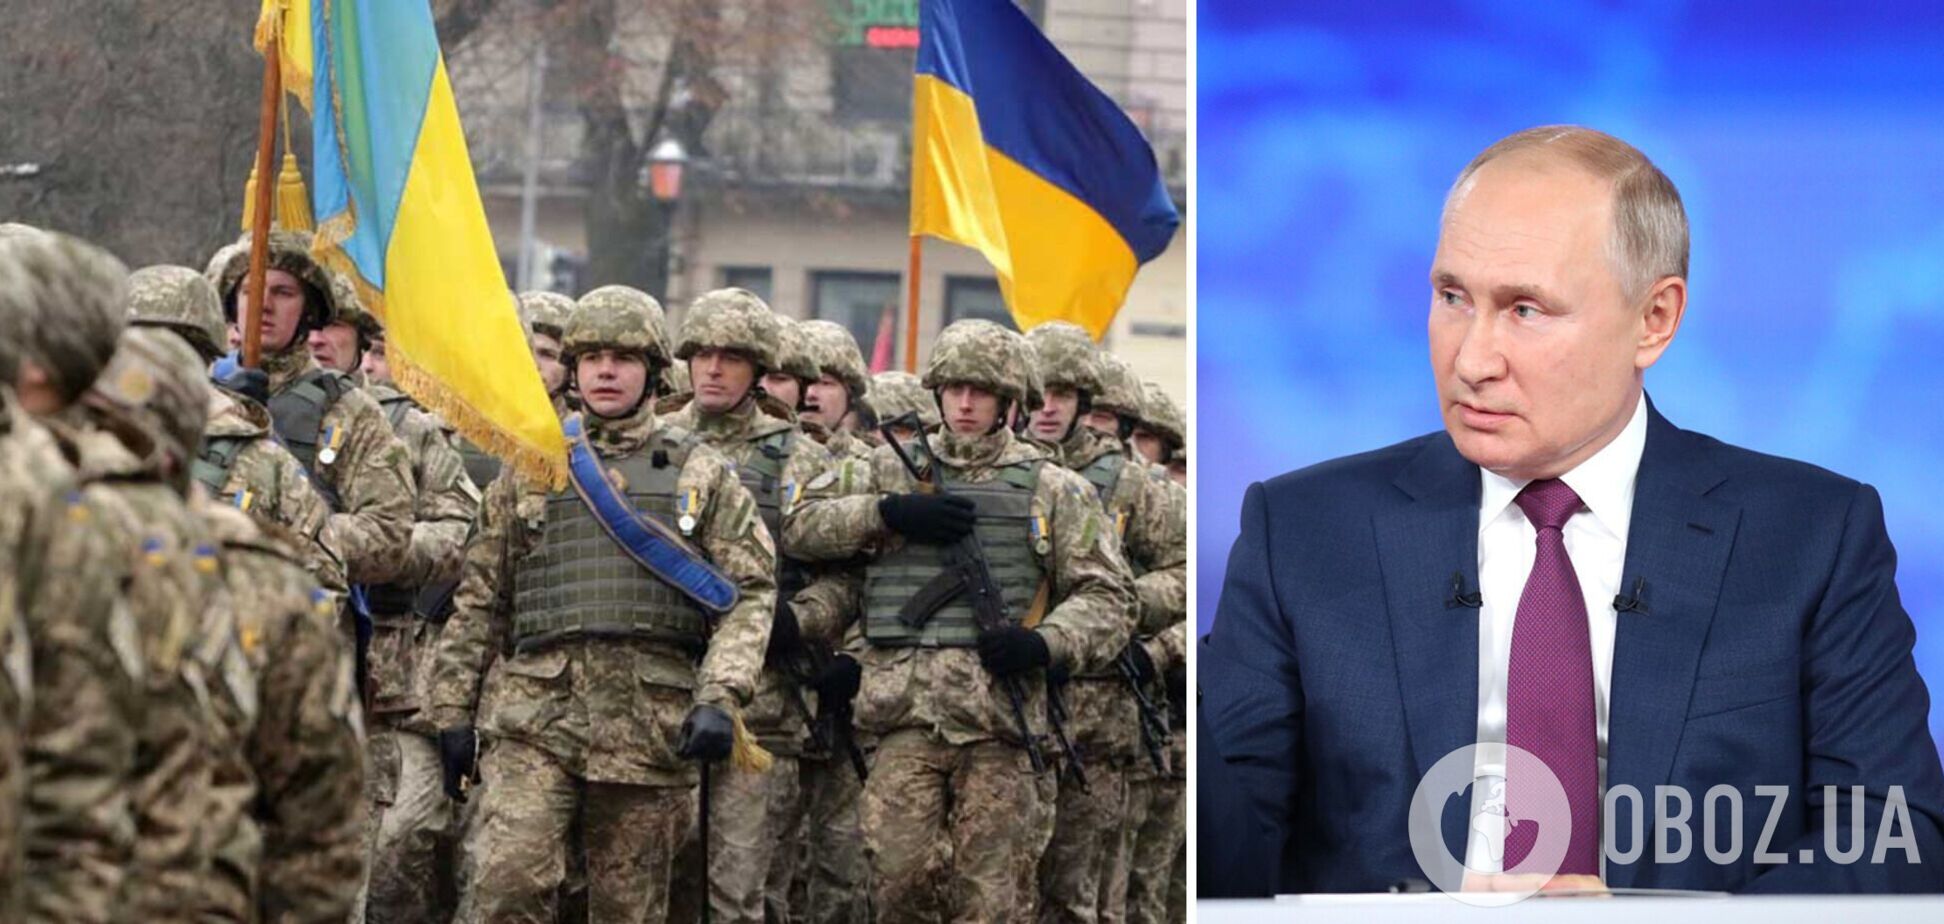 Ситуація змінюється на користь України: підсумки конфлікту Путіна із Заходом